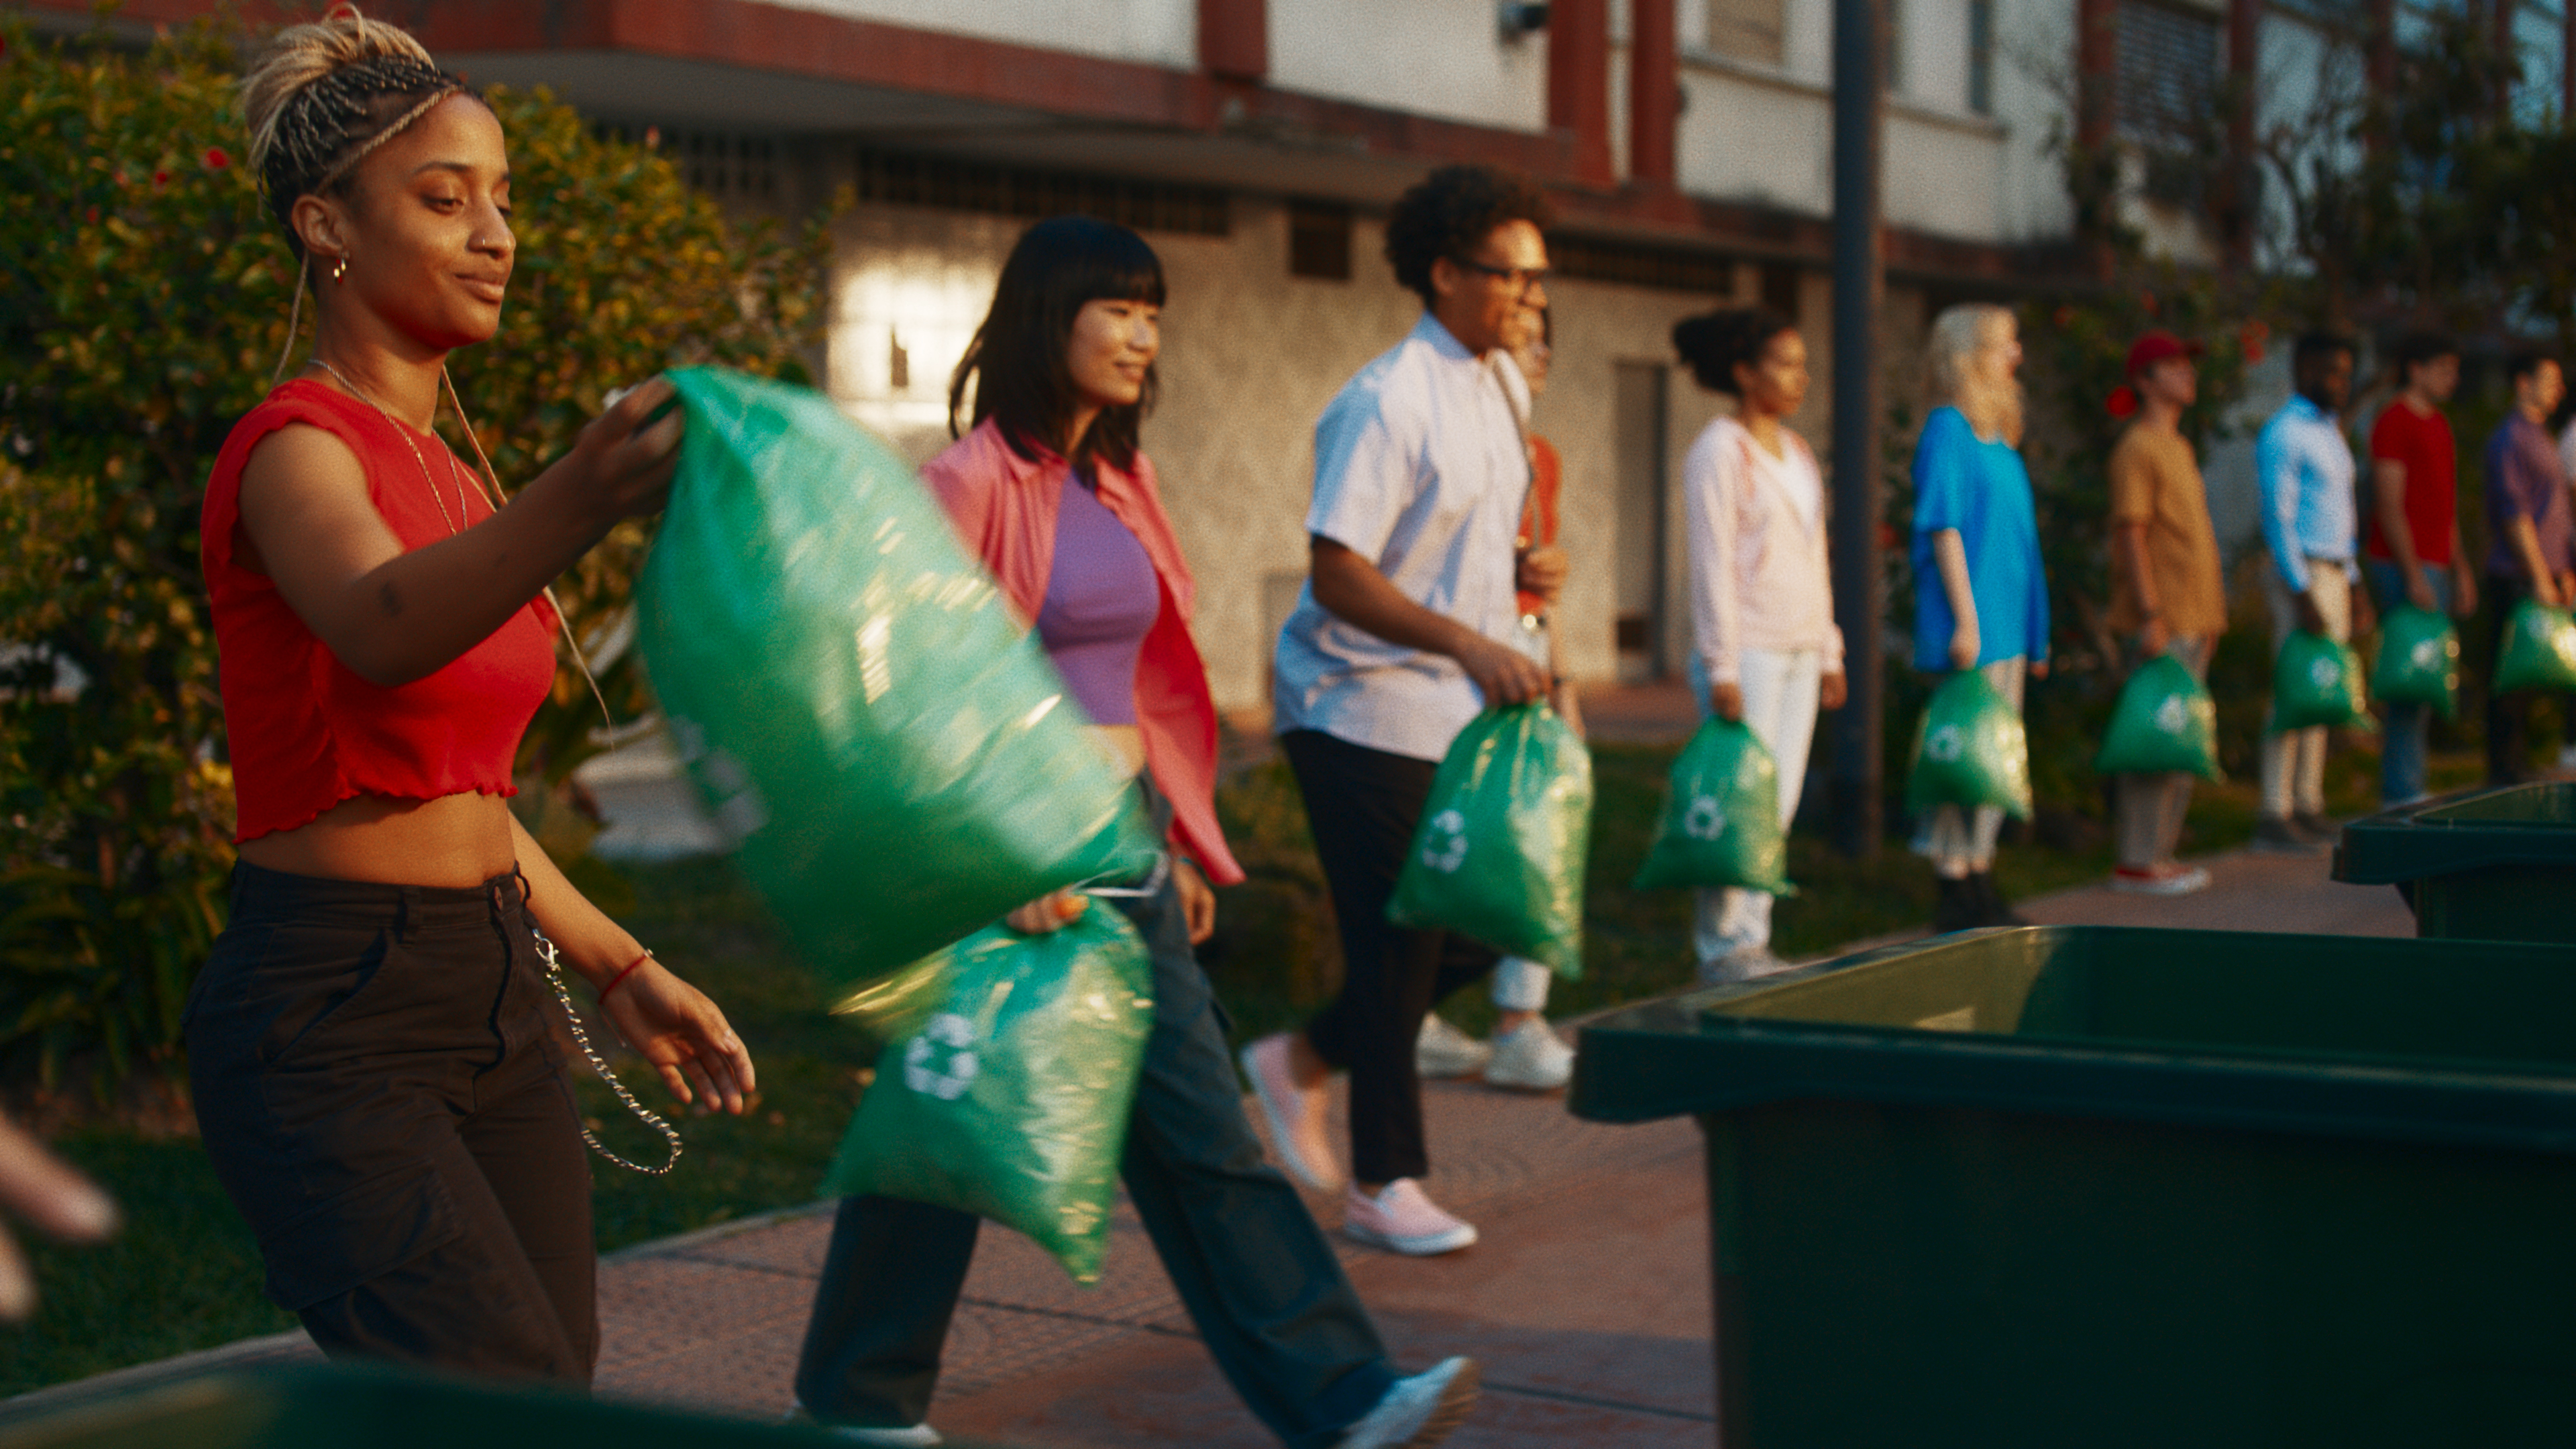 Voluntarios del equipo de Coca-Cola lanzando residuos a un contenedor de reciclaje